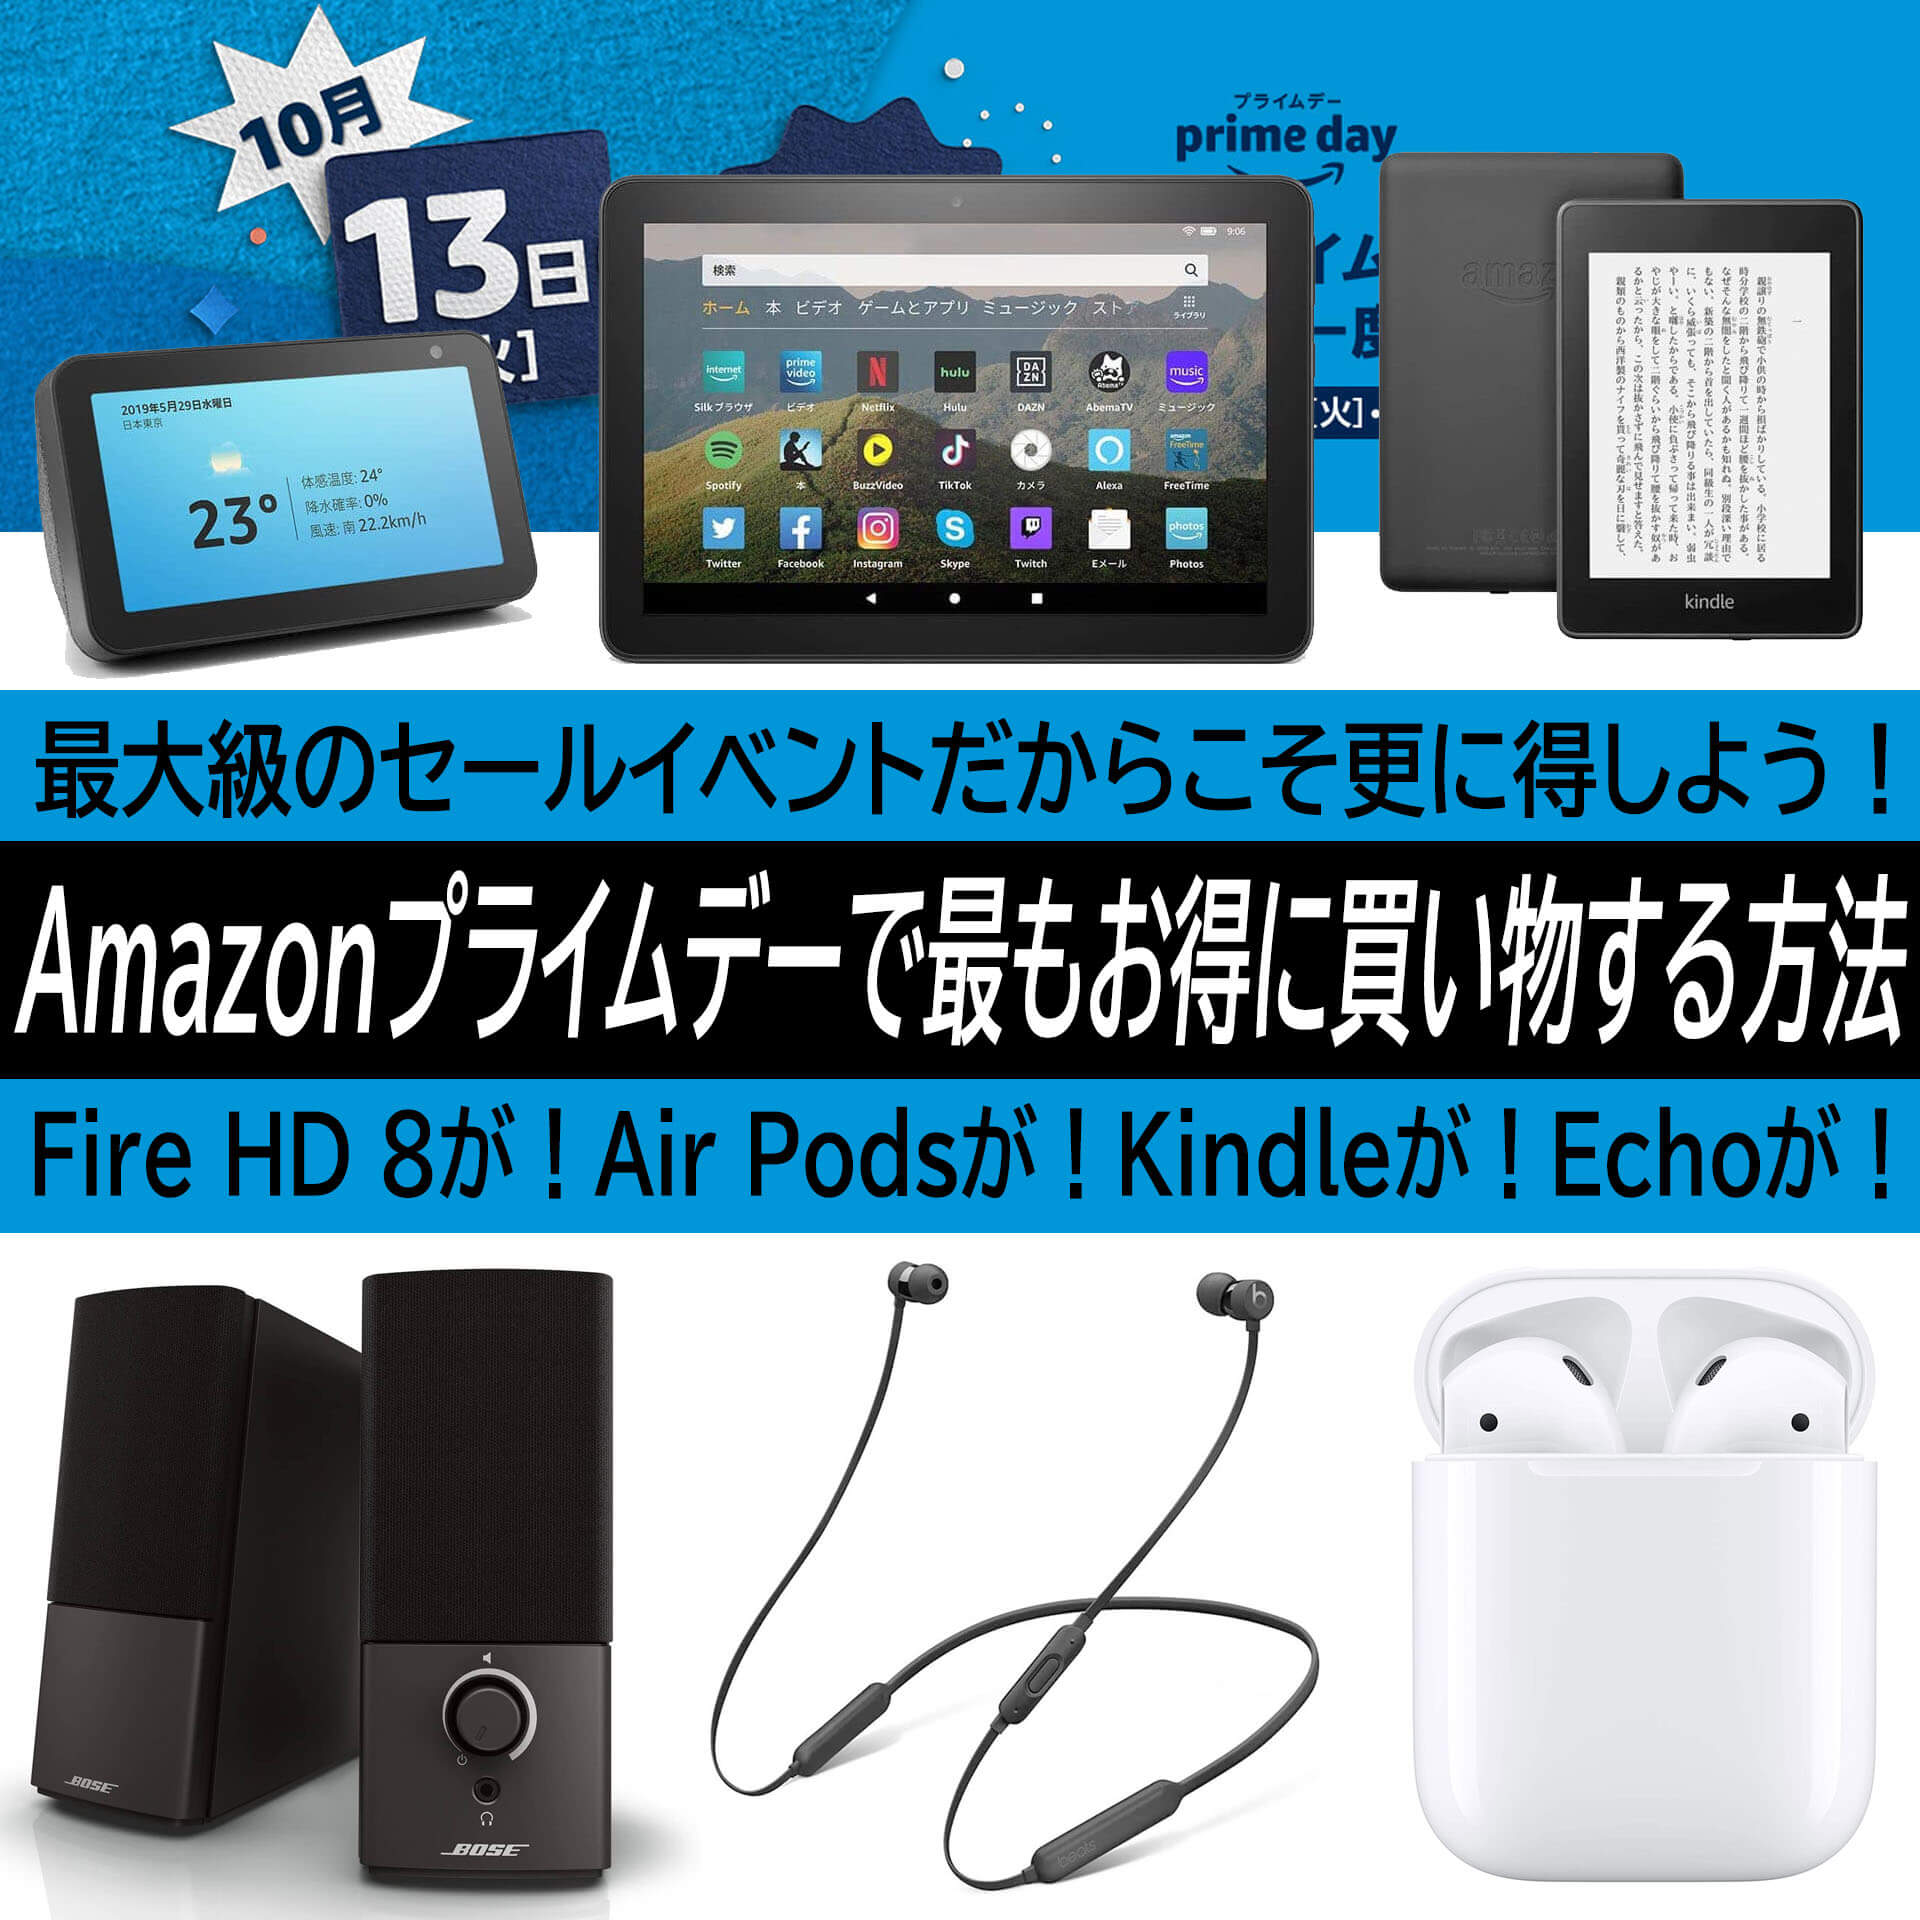 本日終了 Amazonプライムデーで更にお得にfire Hd 8 Air Pods Echo Kindleを購入する方法